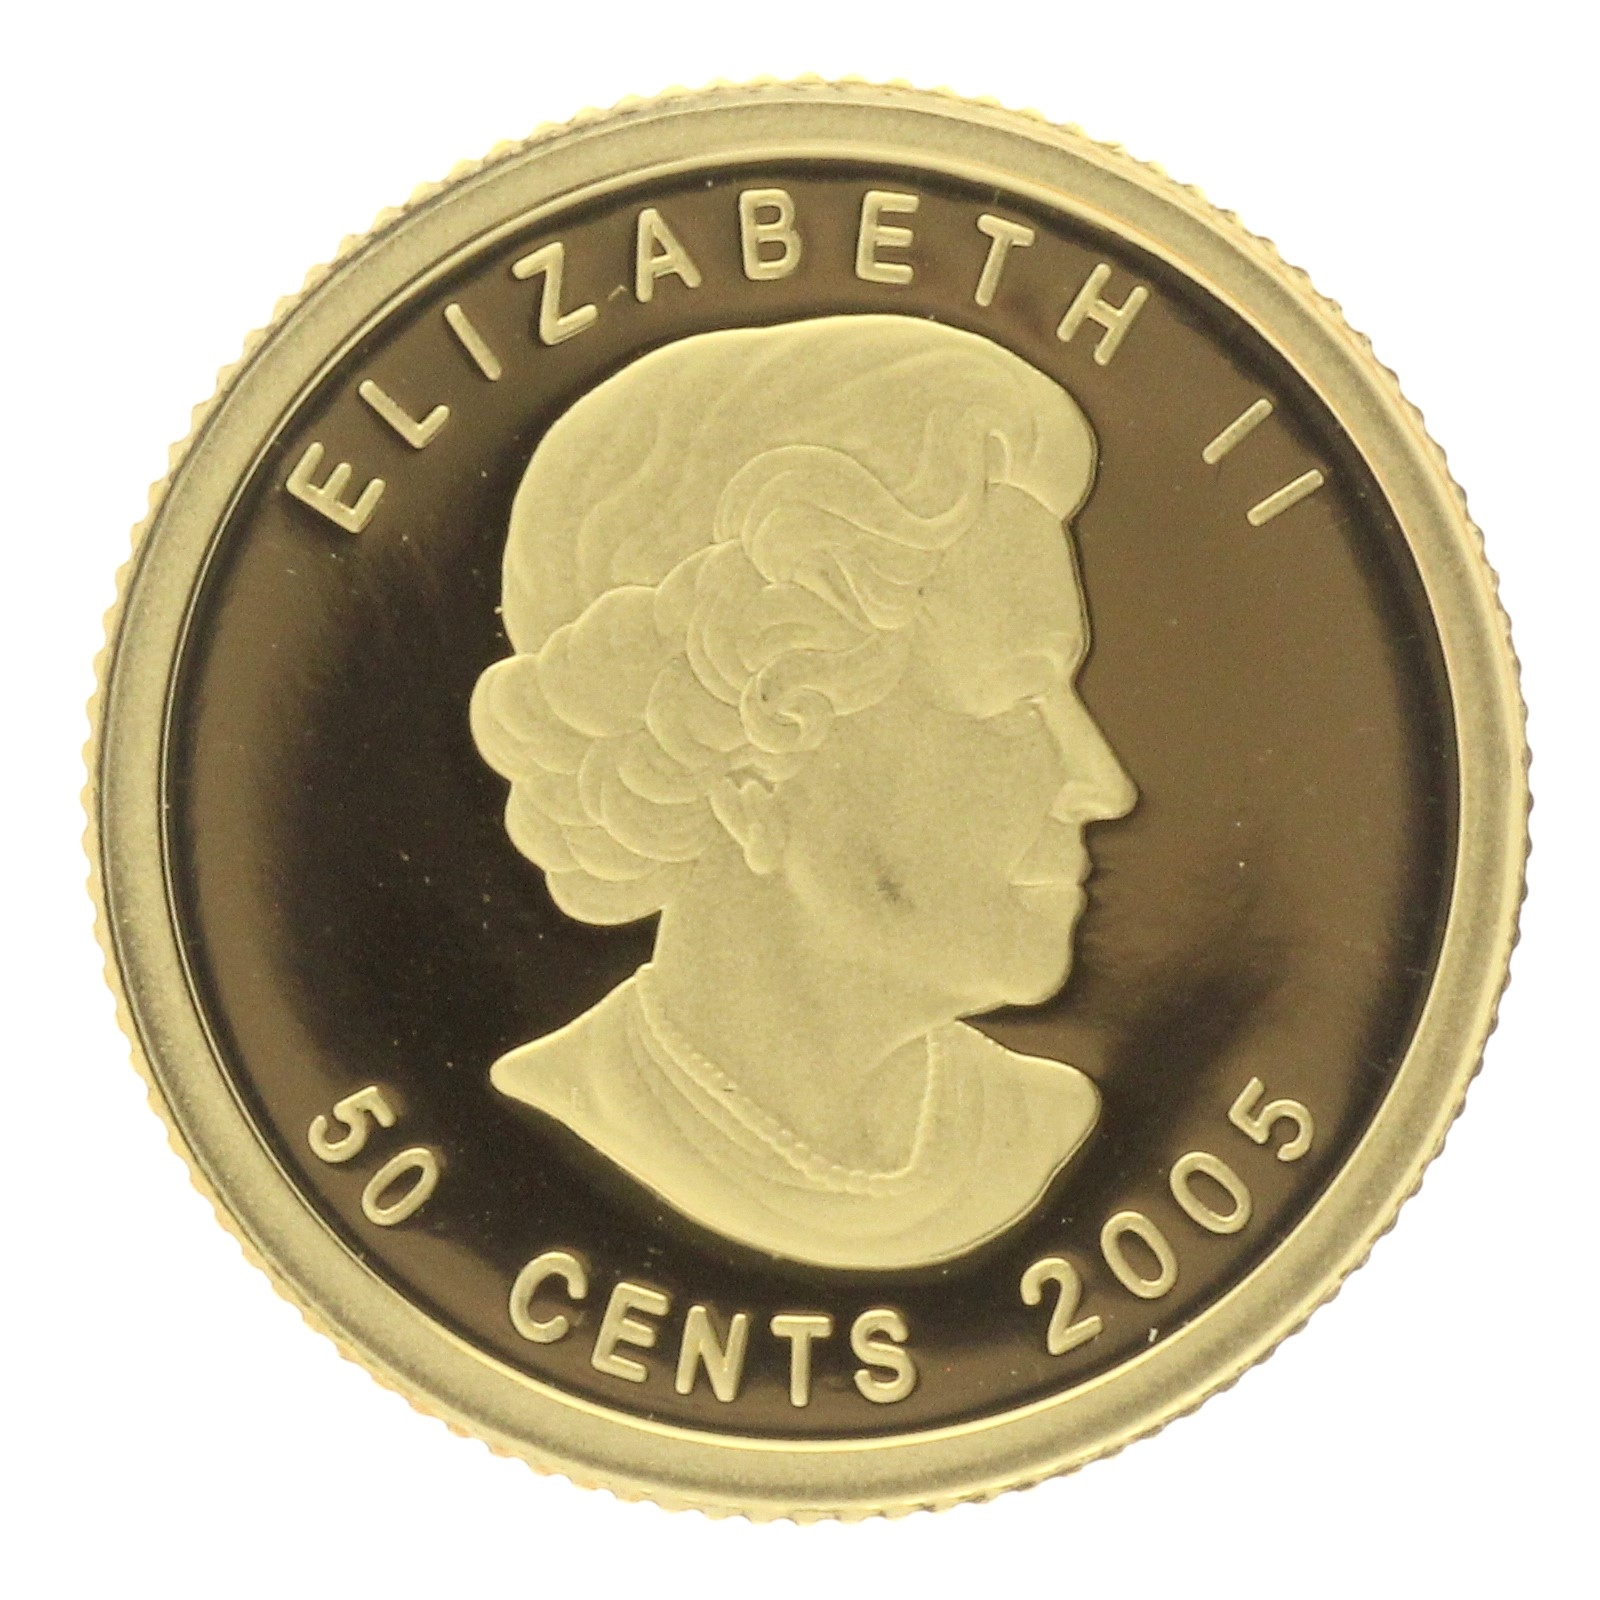 Canada - 50 cents - 2005 - Elizabeth II - 1/25oz